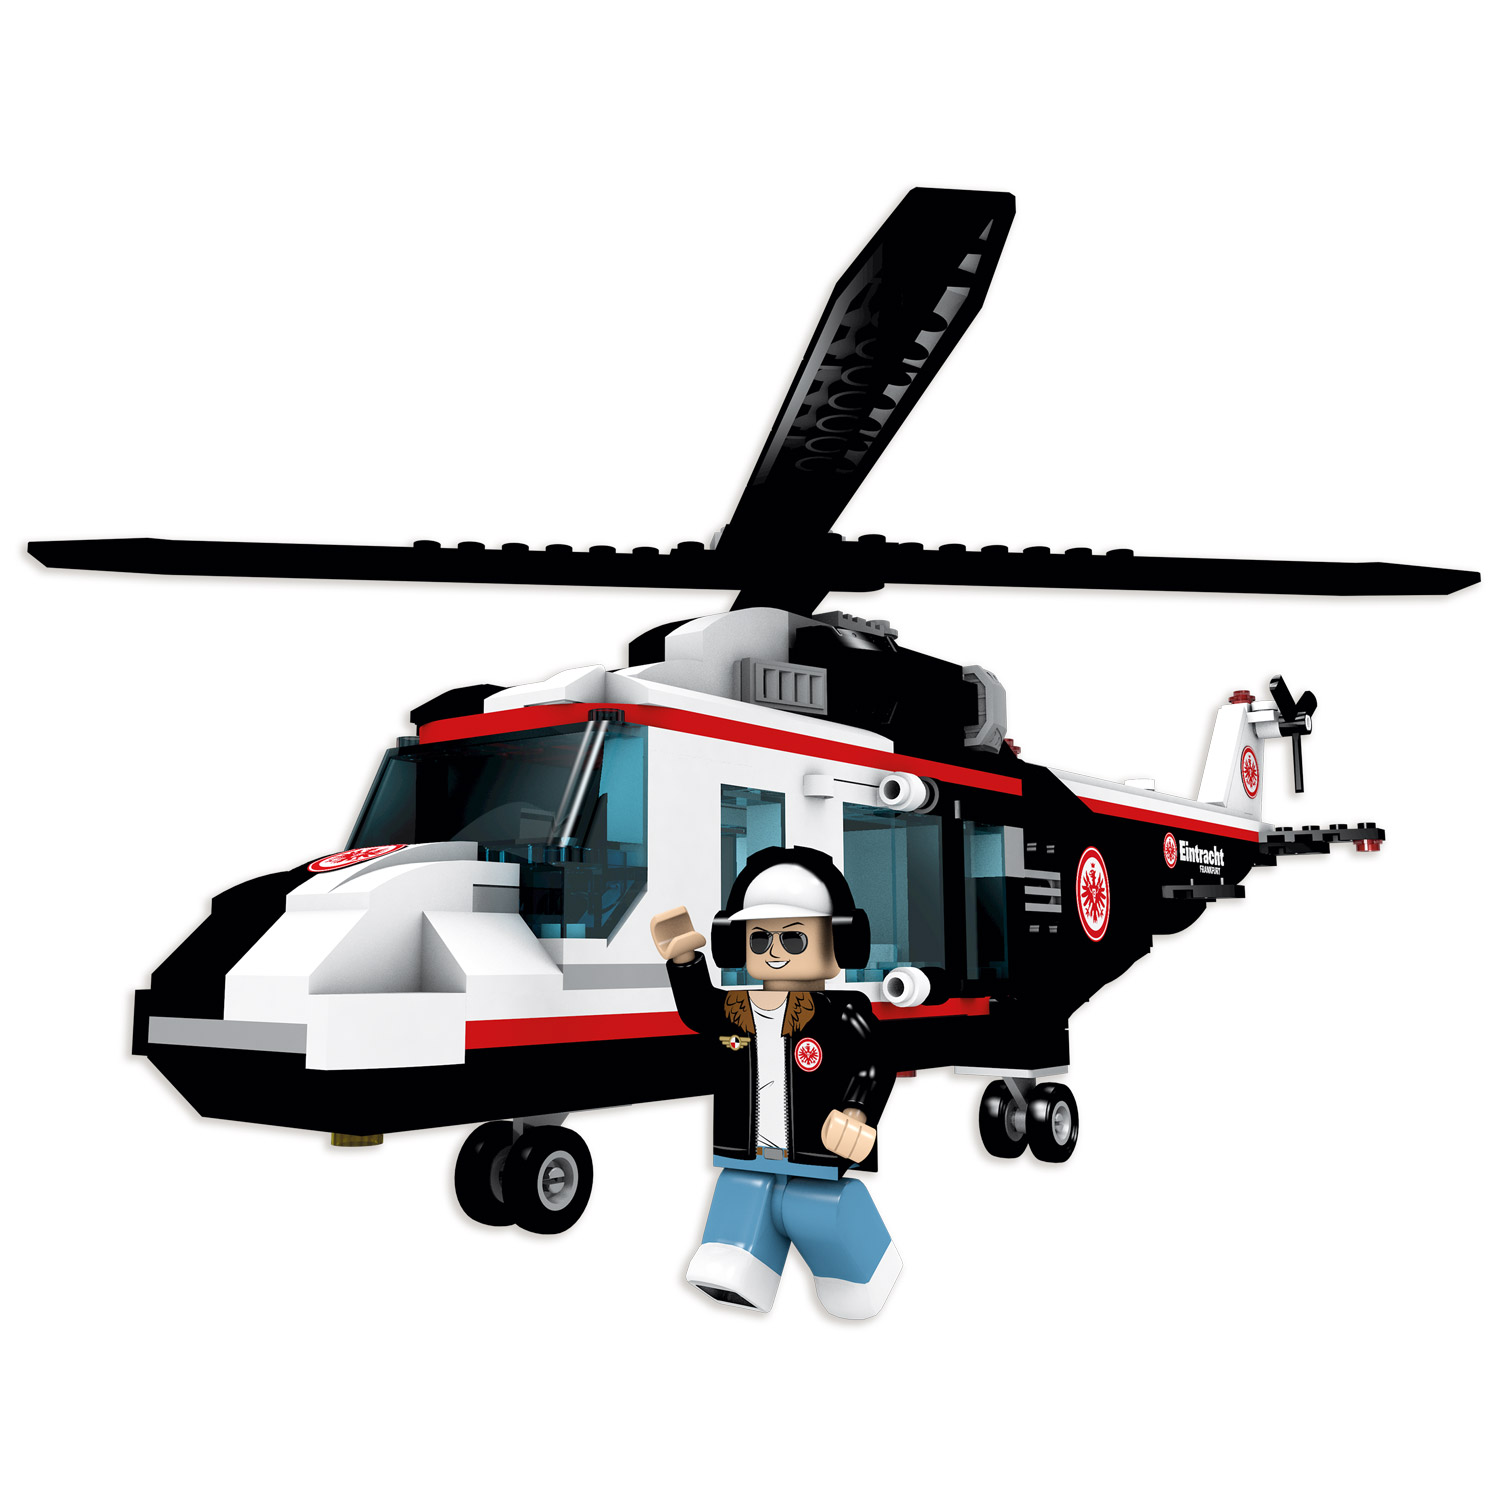 Bild 2: Bausatz Helikopter